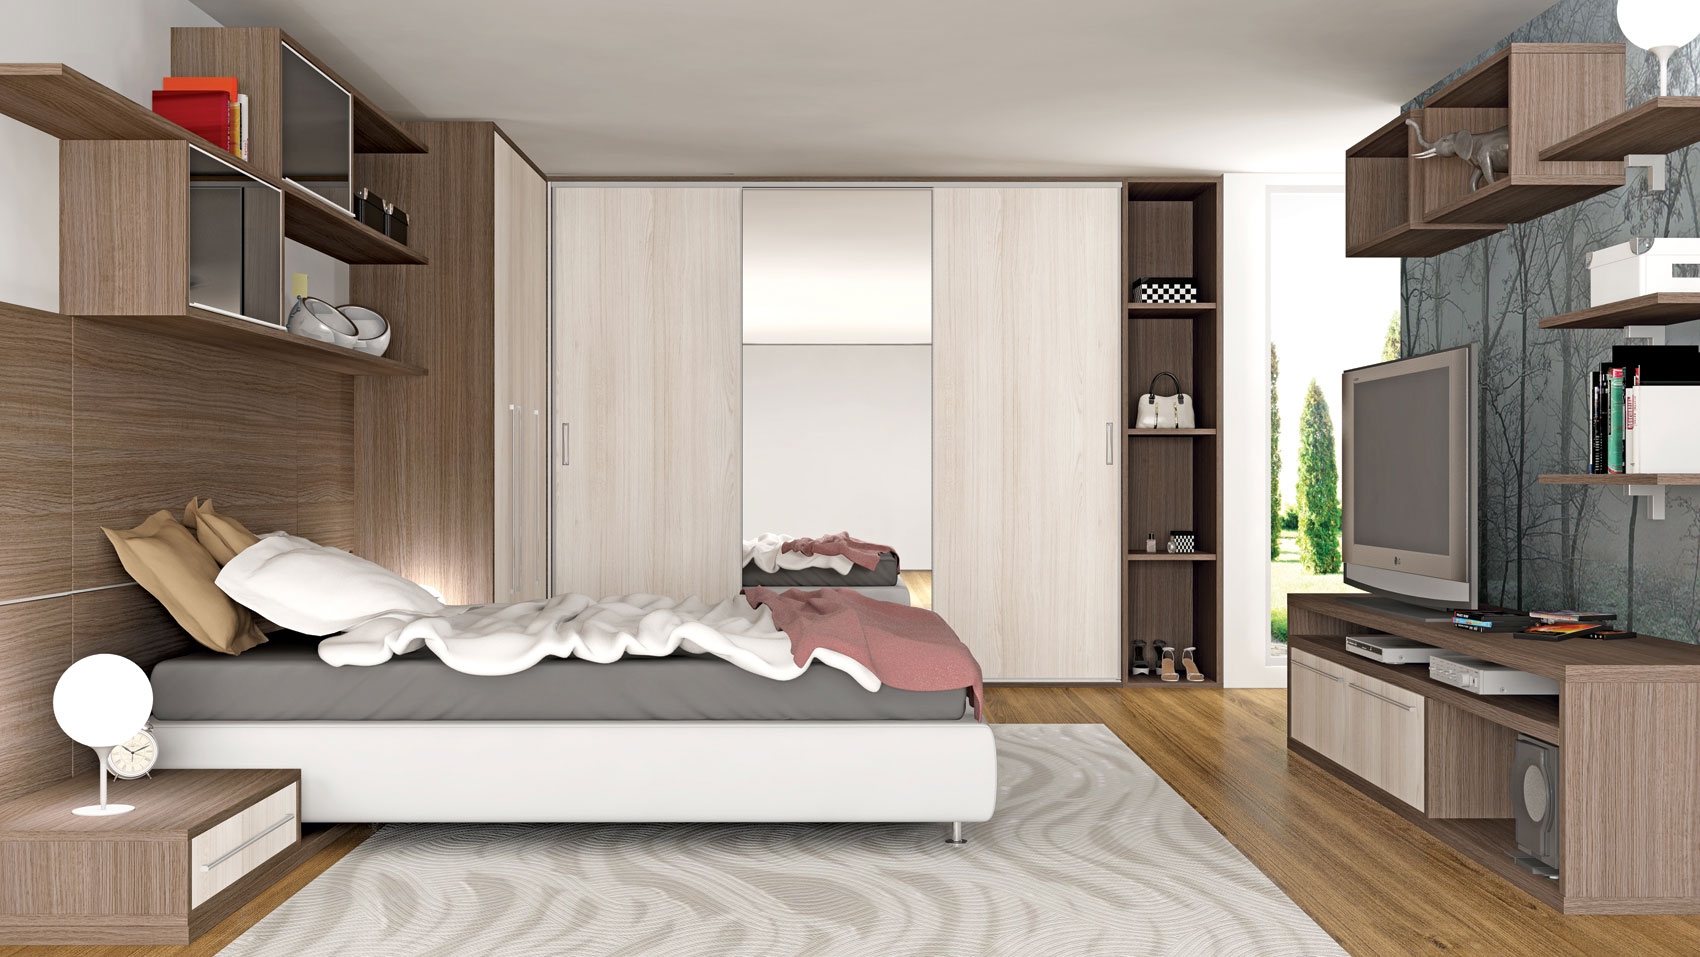 Dormitórios Planejados em São Paulo no Arujá - Dormitório Planejado